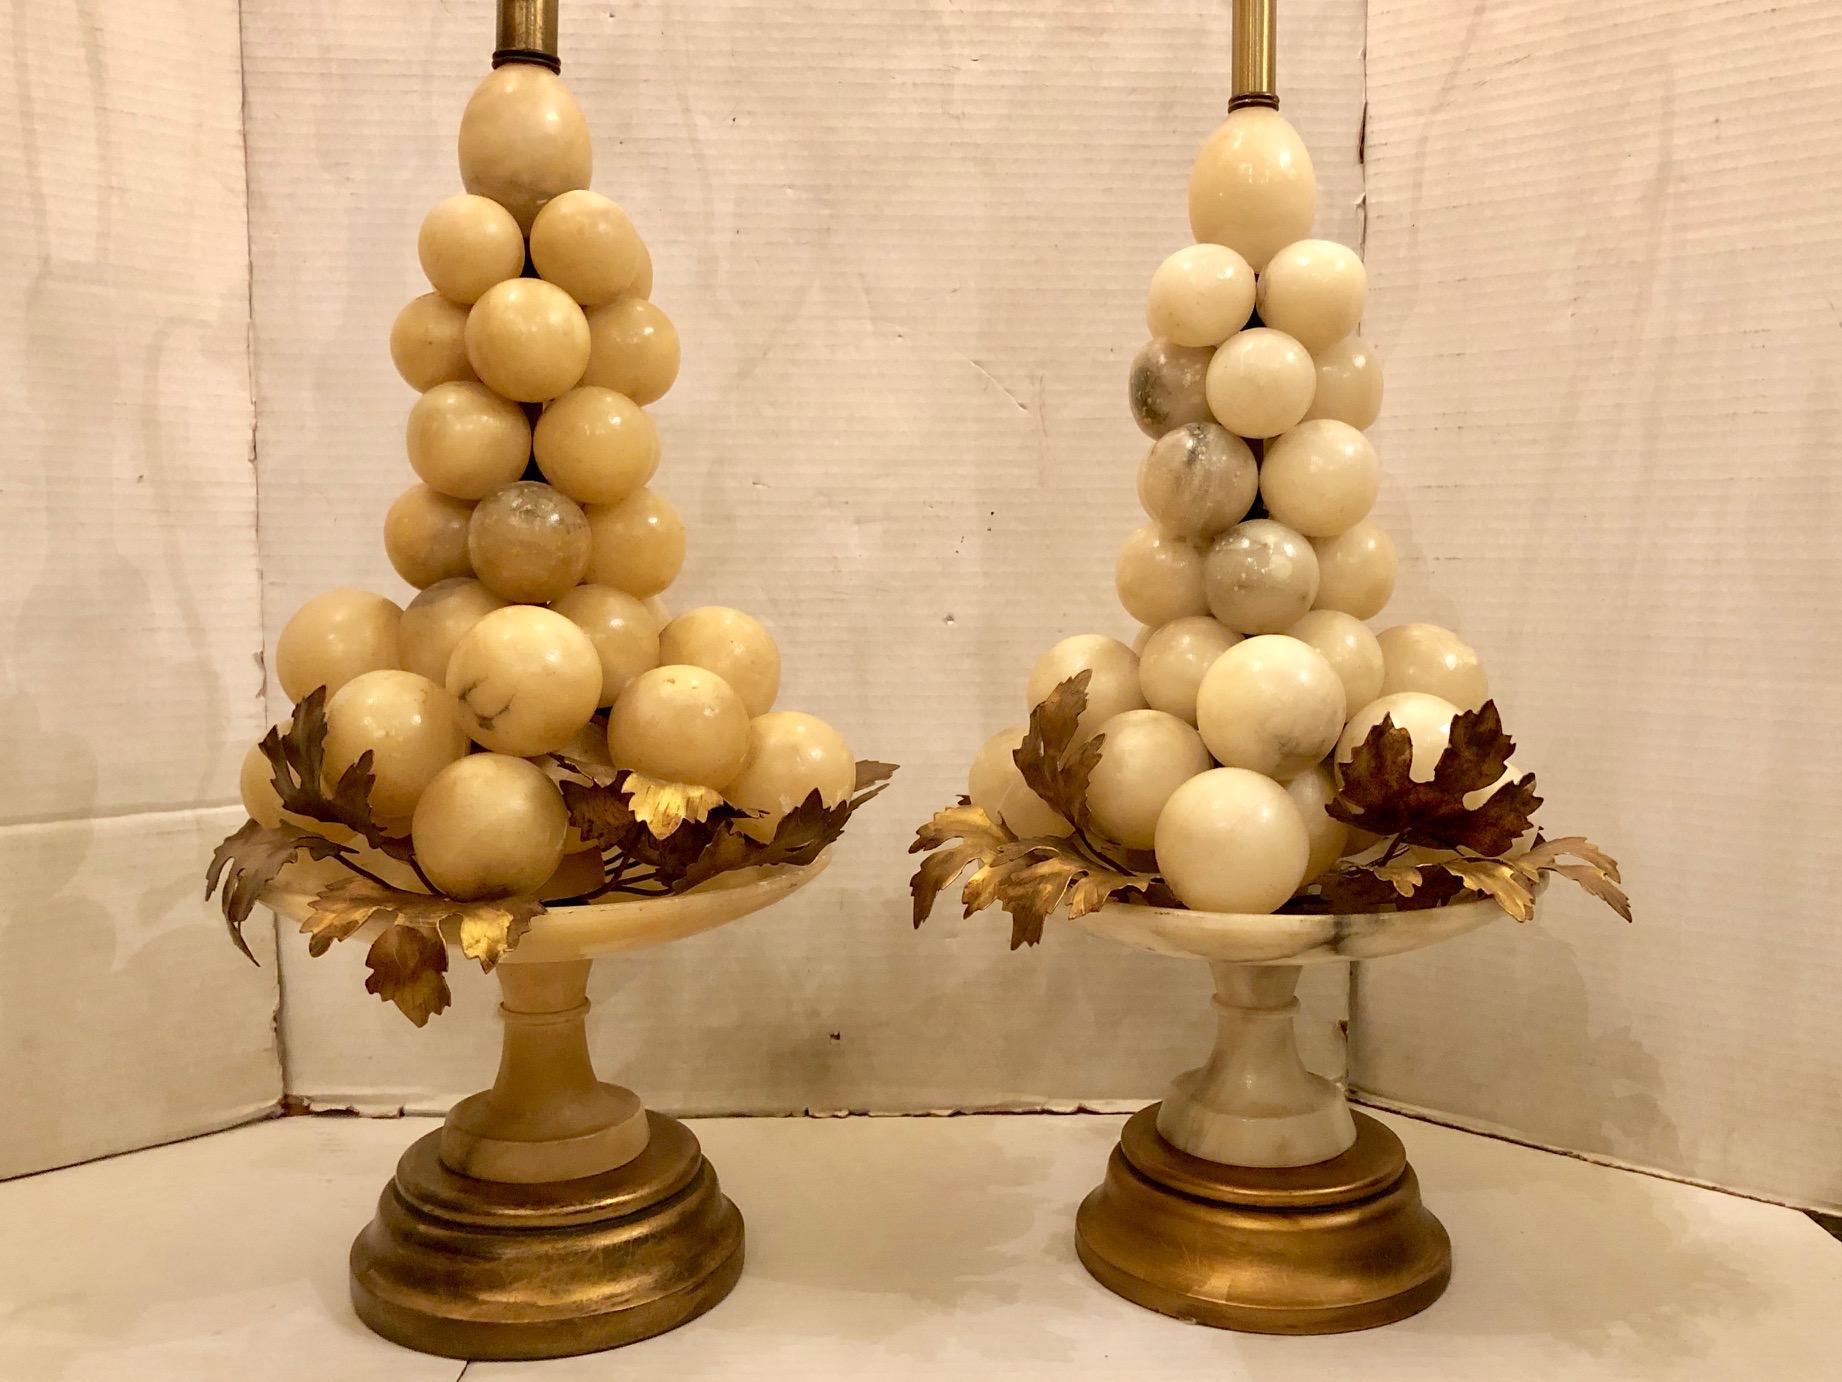 Paire de grandes lampes italiennes en albâtre datant des années 1940, en forme de raisins sur une tassa en albâtre. Bases en bois doré, feuilles de vigne en métal doré.

Mesures :
Hauteur du corps : 22